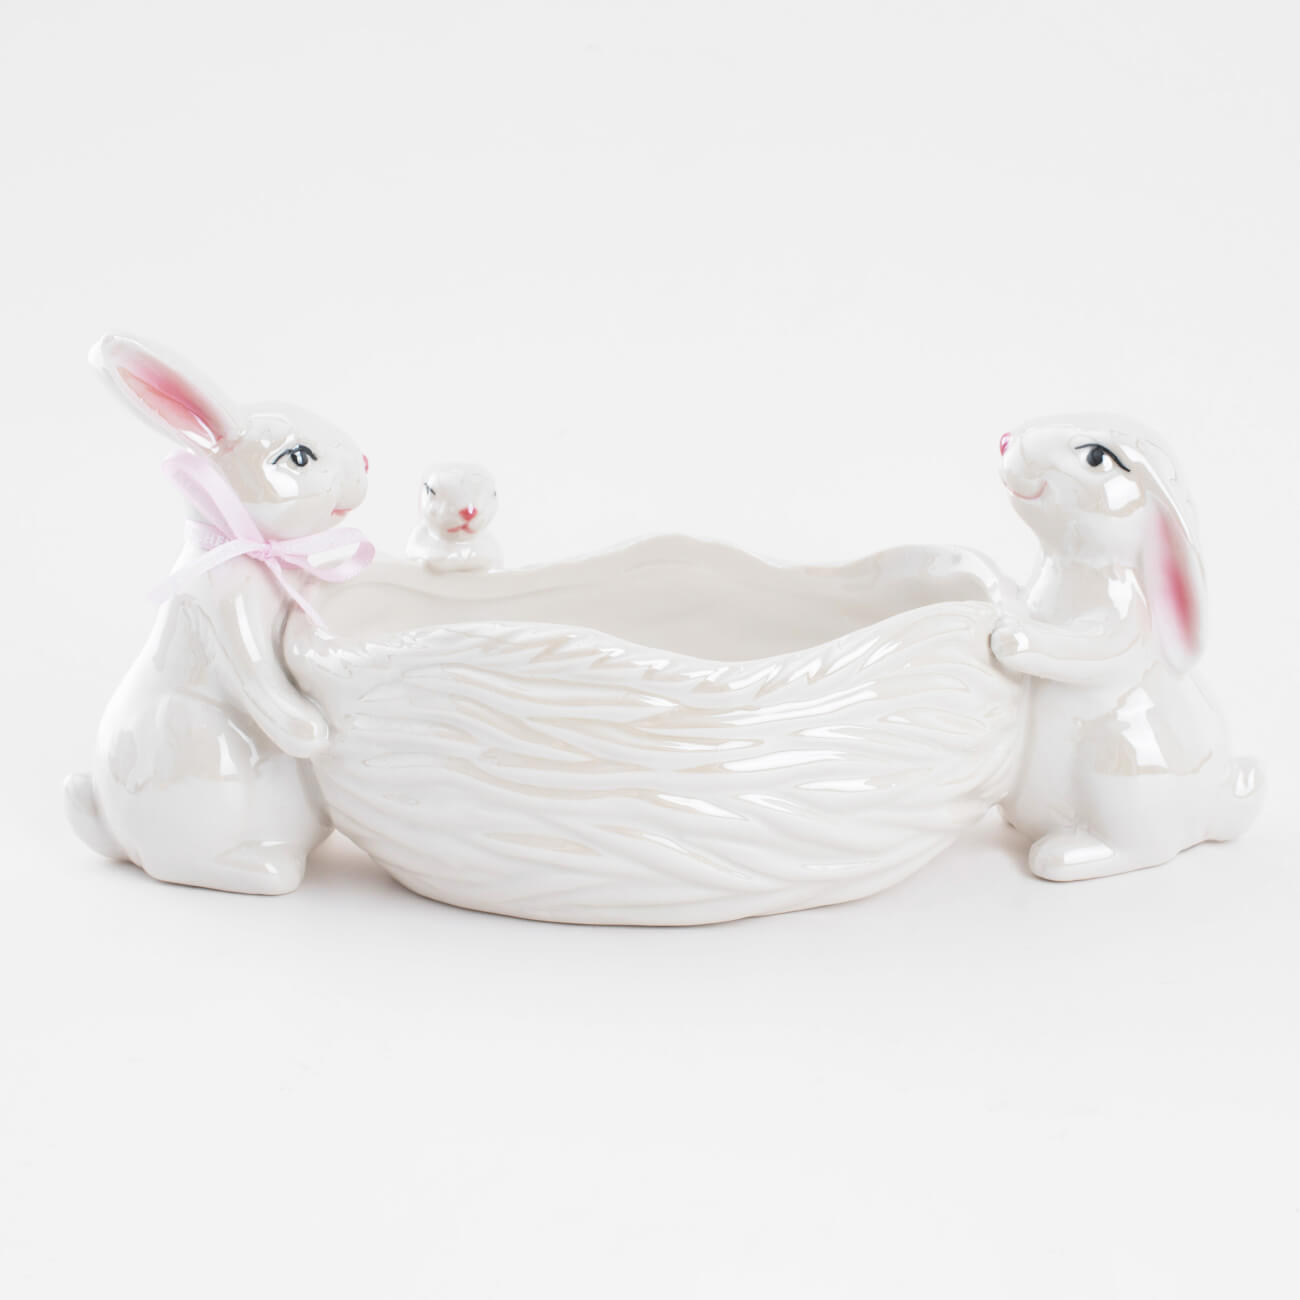 конфетница 30х12 см с ручками керамика белая перламутр два кролика в корзине easter Конфетница, 29х13 см, фарфор P, белая, перламутр, Три кролика у корзины, Easter